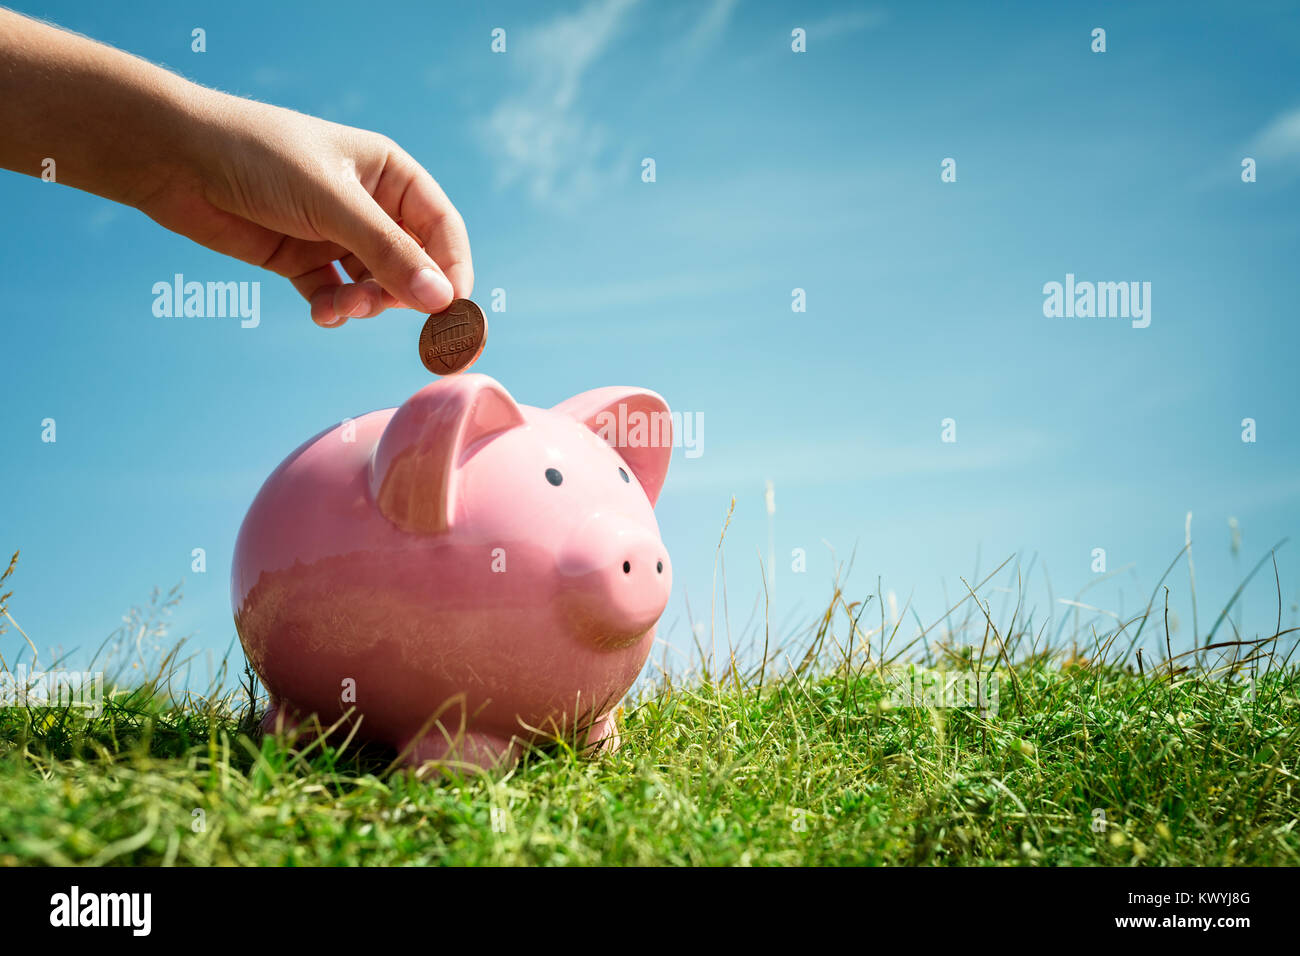 Bambino mano inserire monete e risparmio di denaro nel salvadanaio con erba e cielo blu sullo sfondo Foto Stock